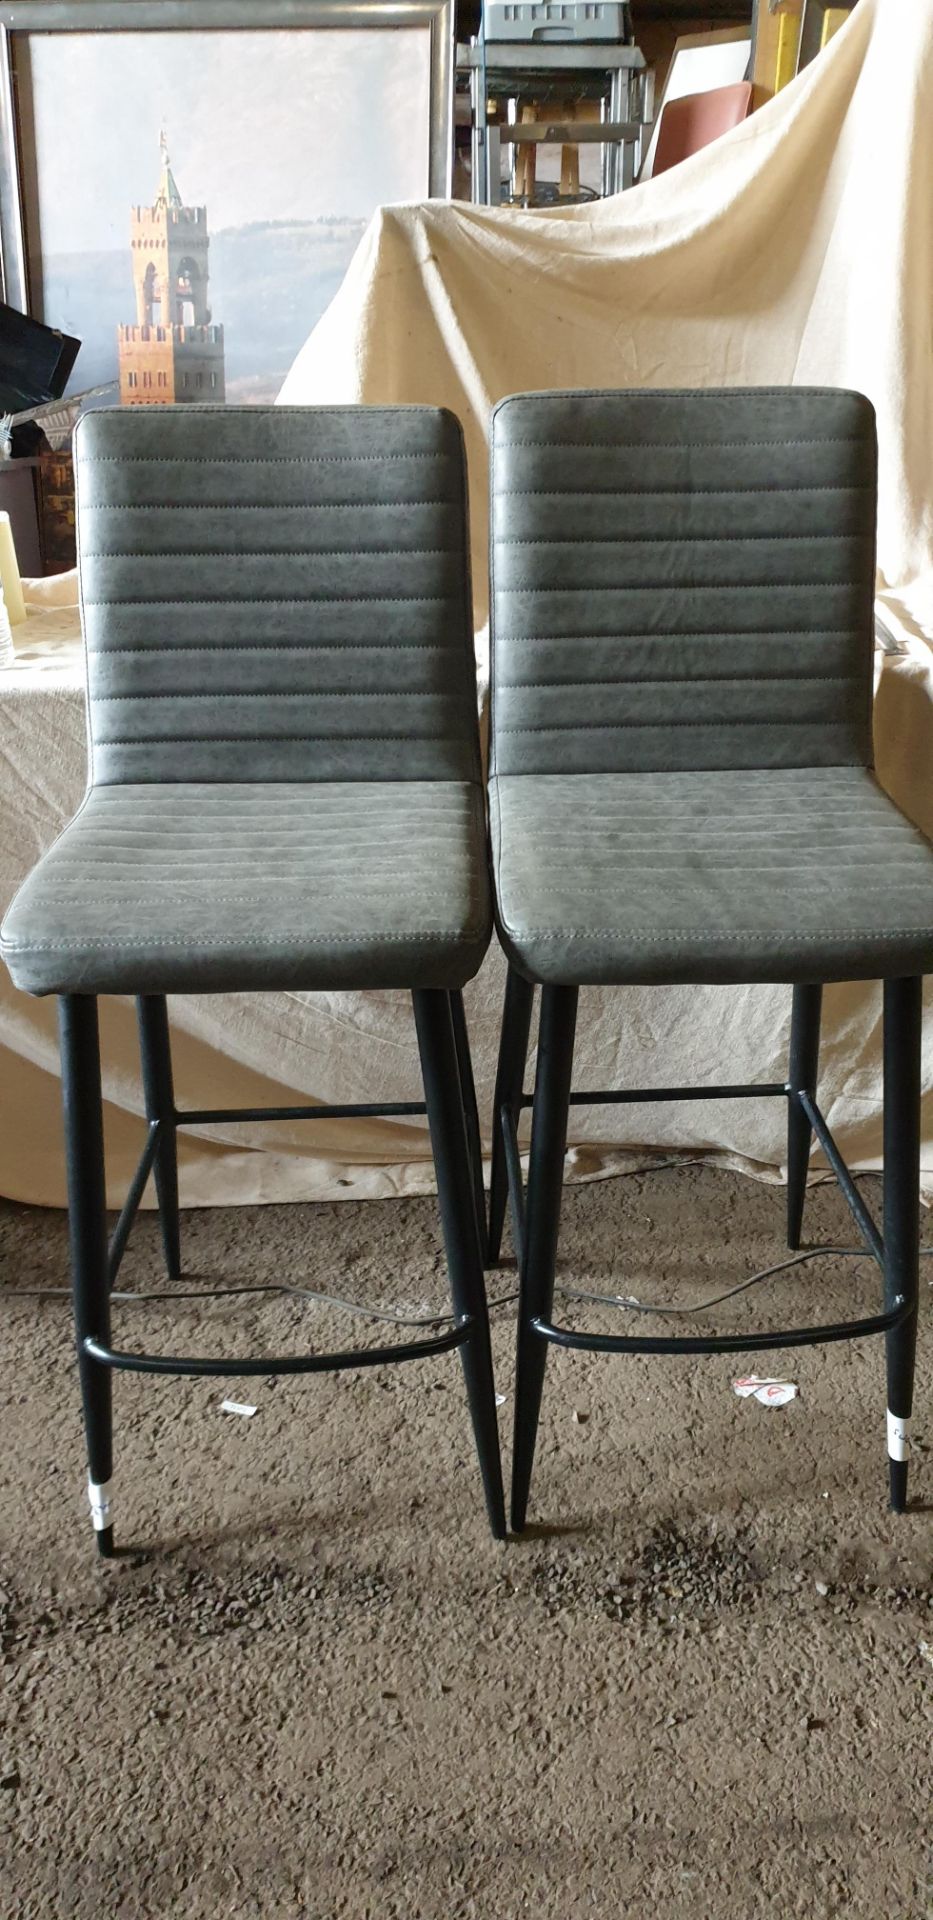 14 ; Grey upholstered, black metal based bar stools